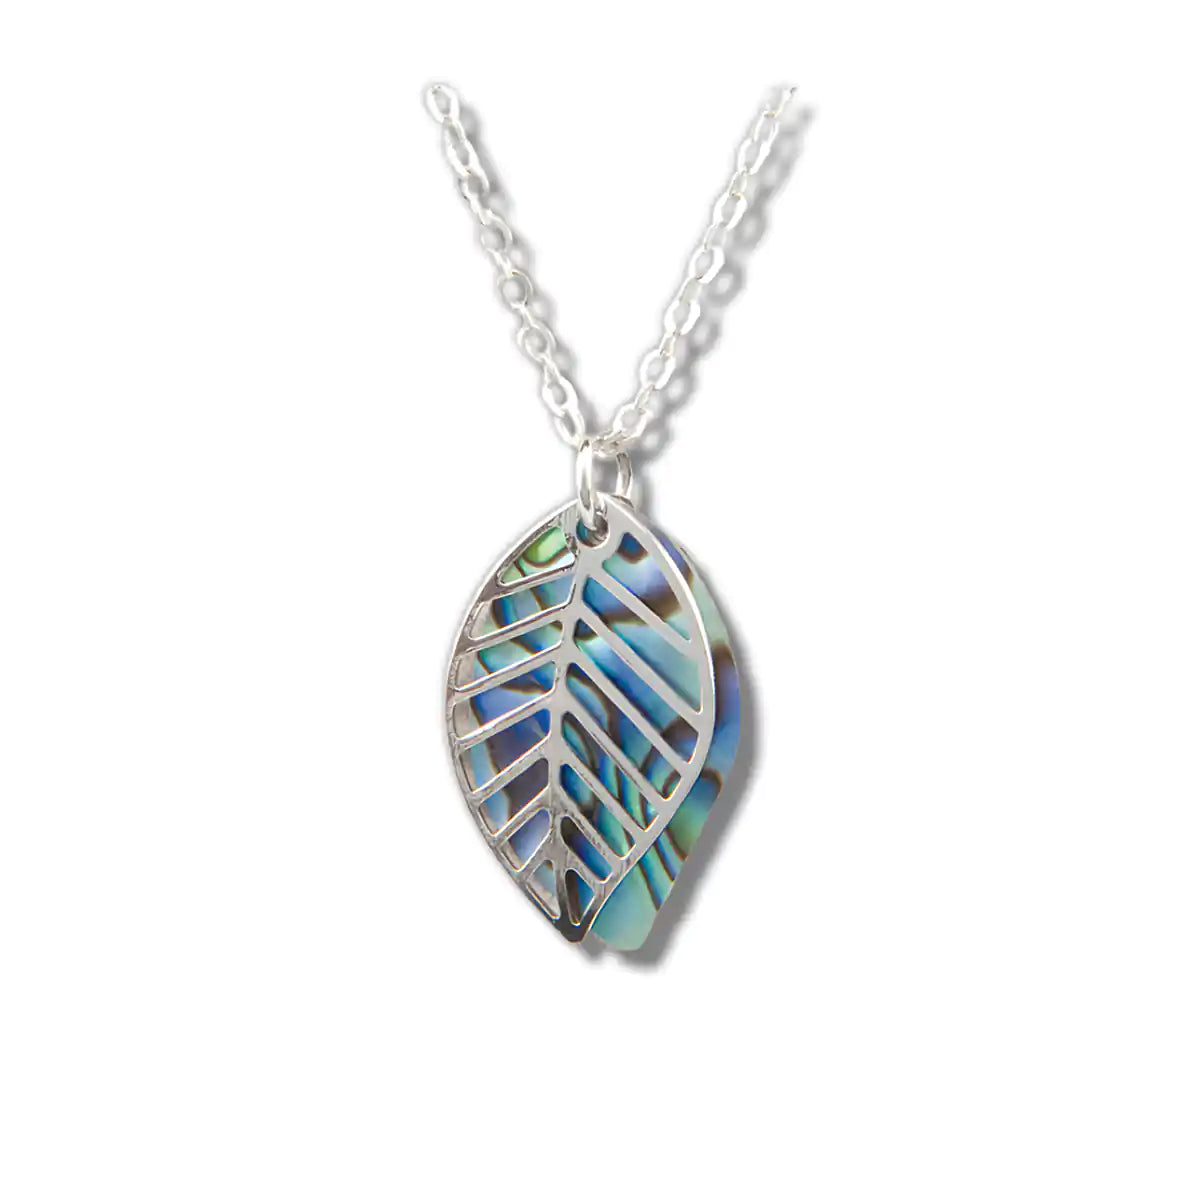 Glacier pearle leaf filigree necklace